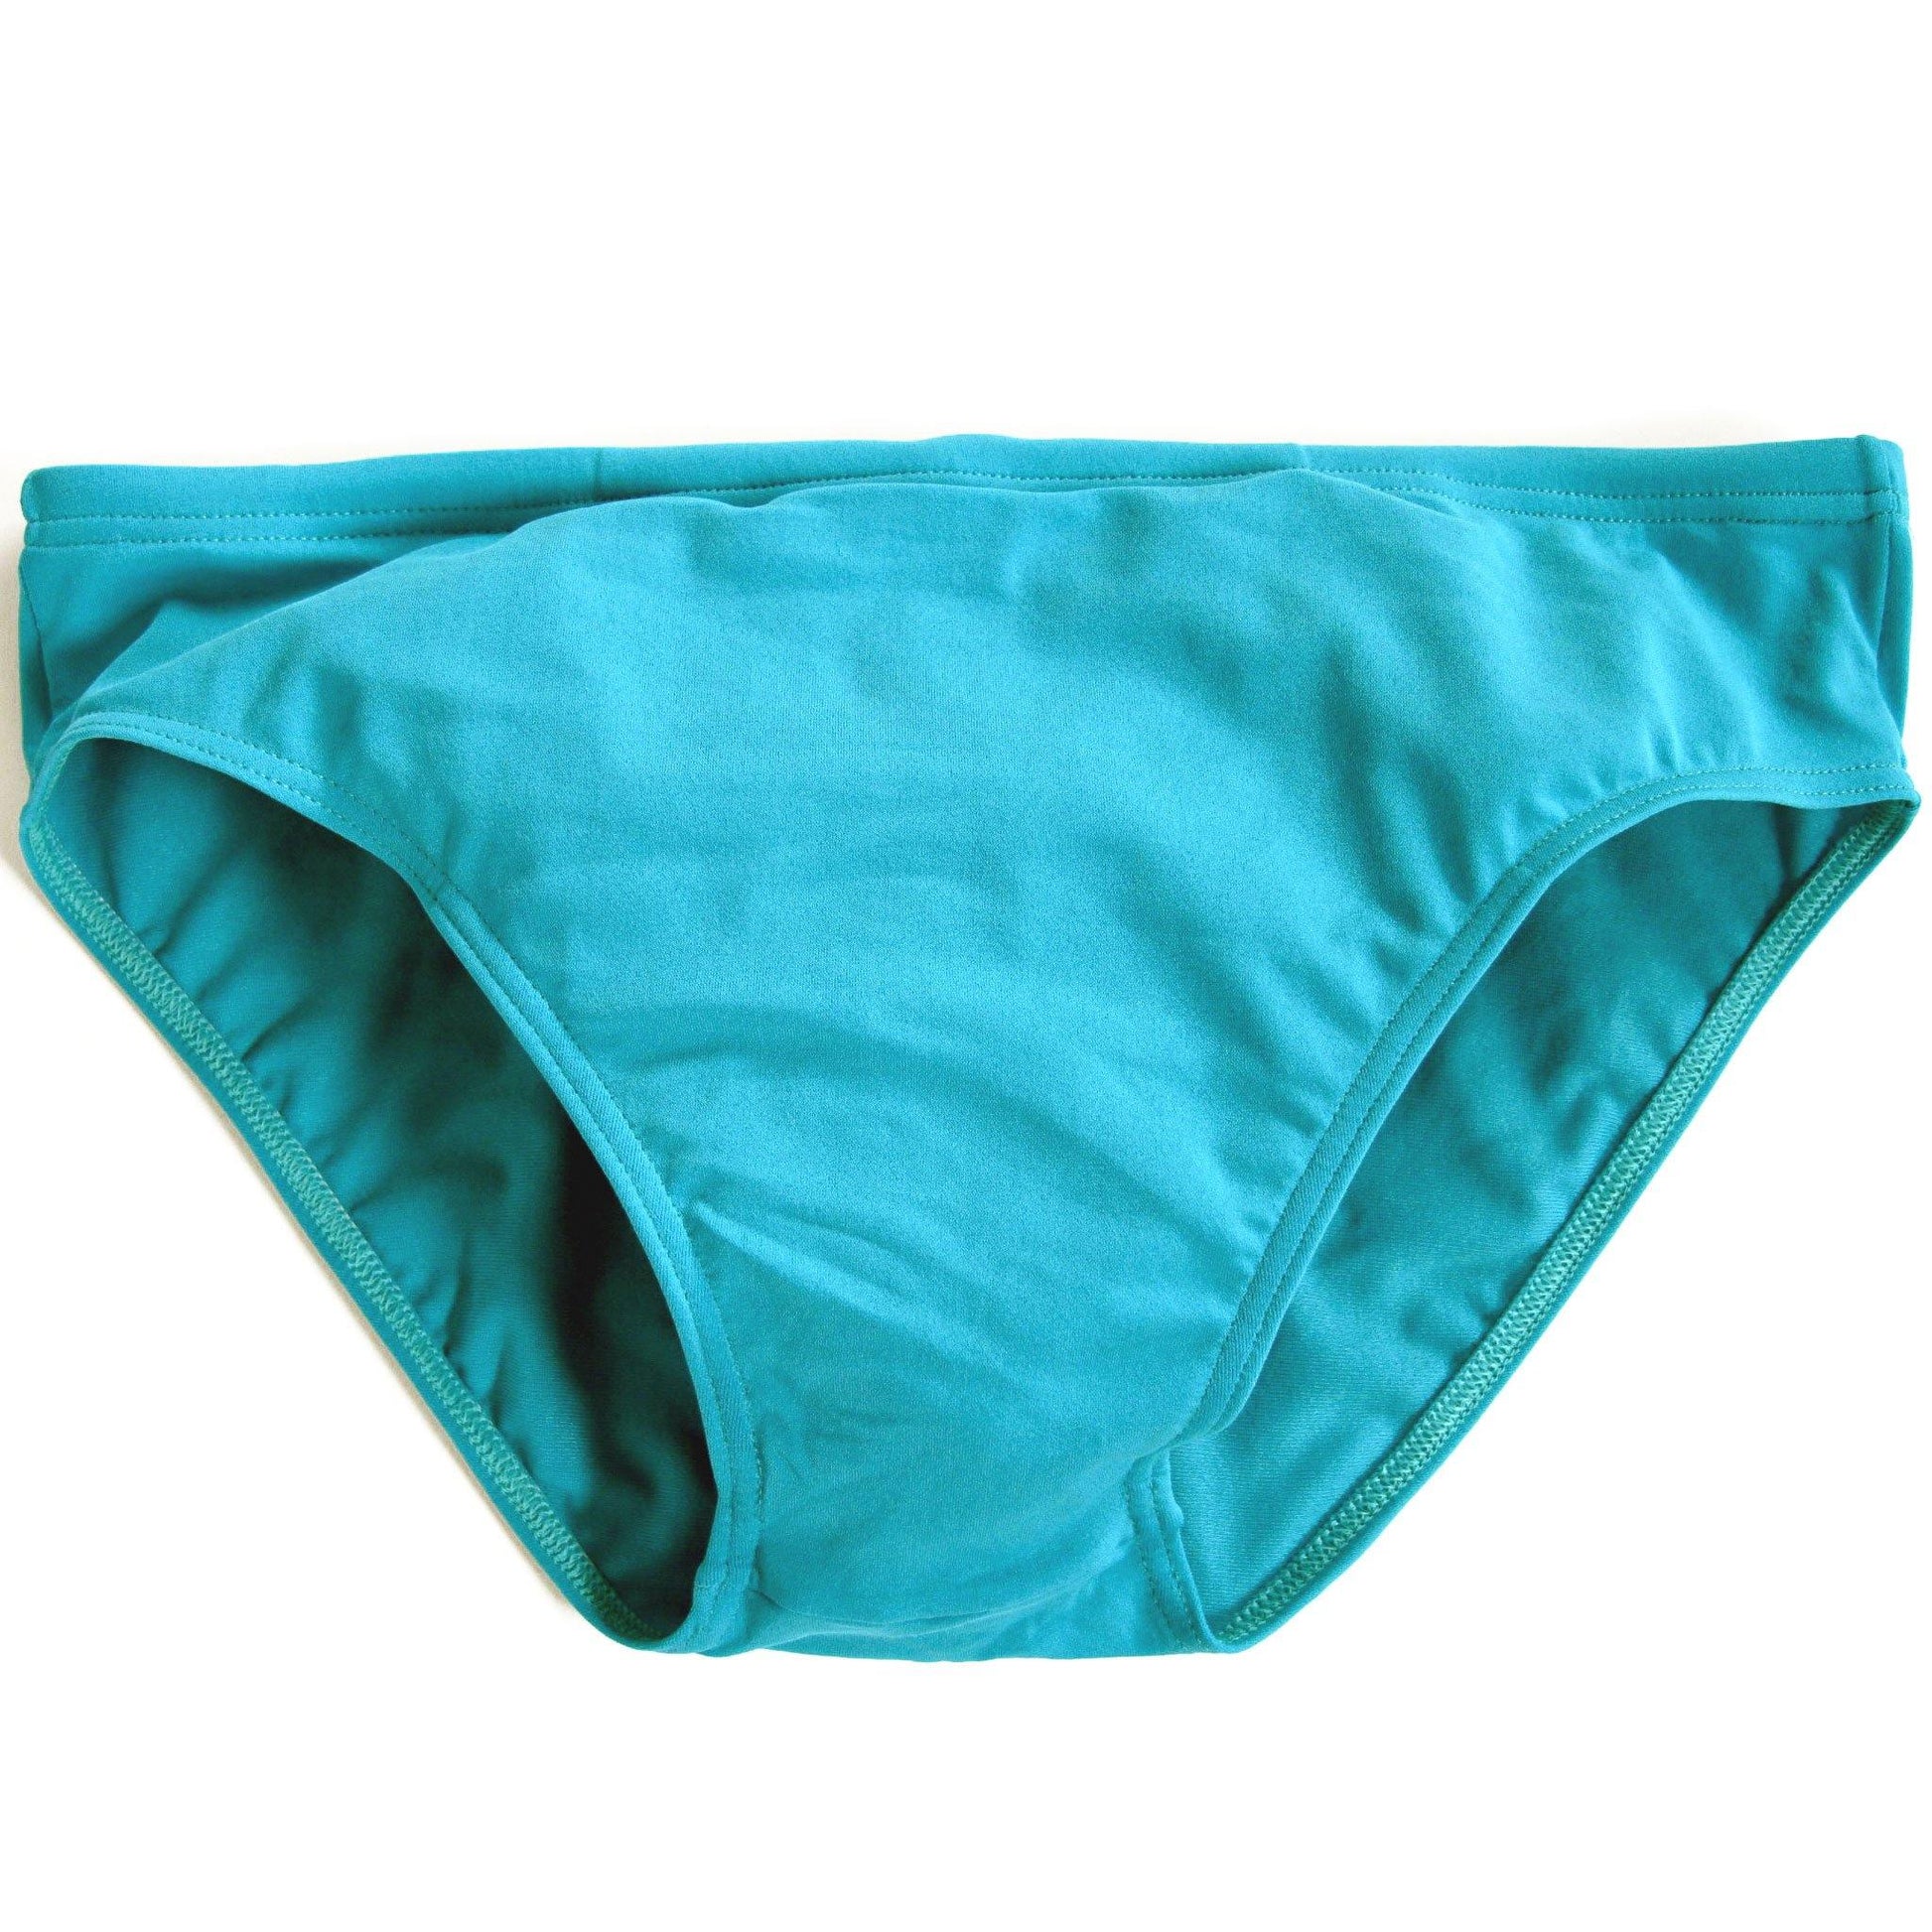 CIRCA75 Men's Swim Brief - Turquoise | CIRCA75